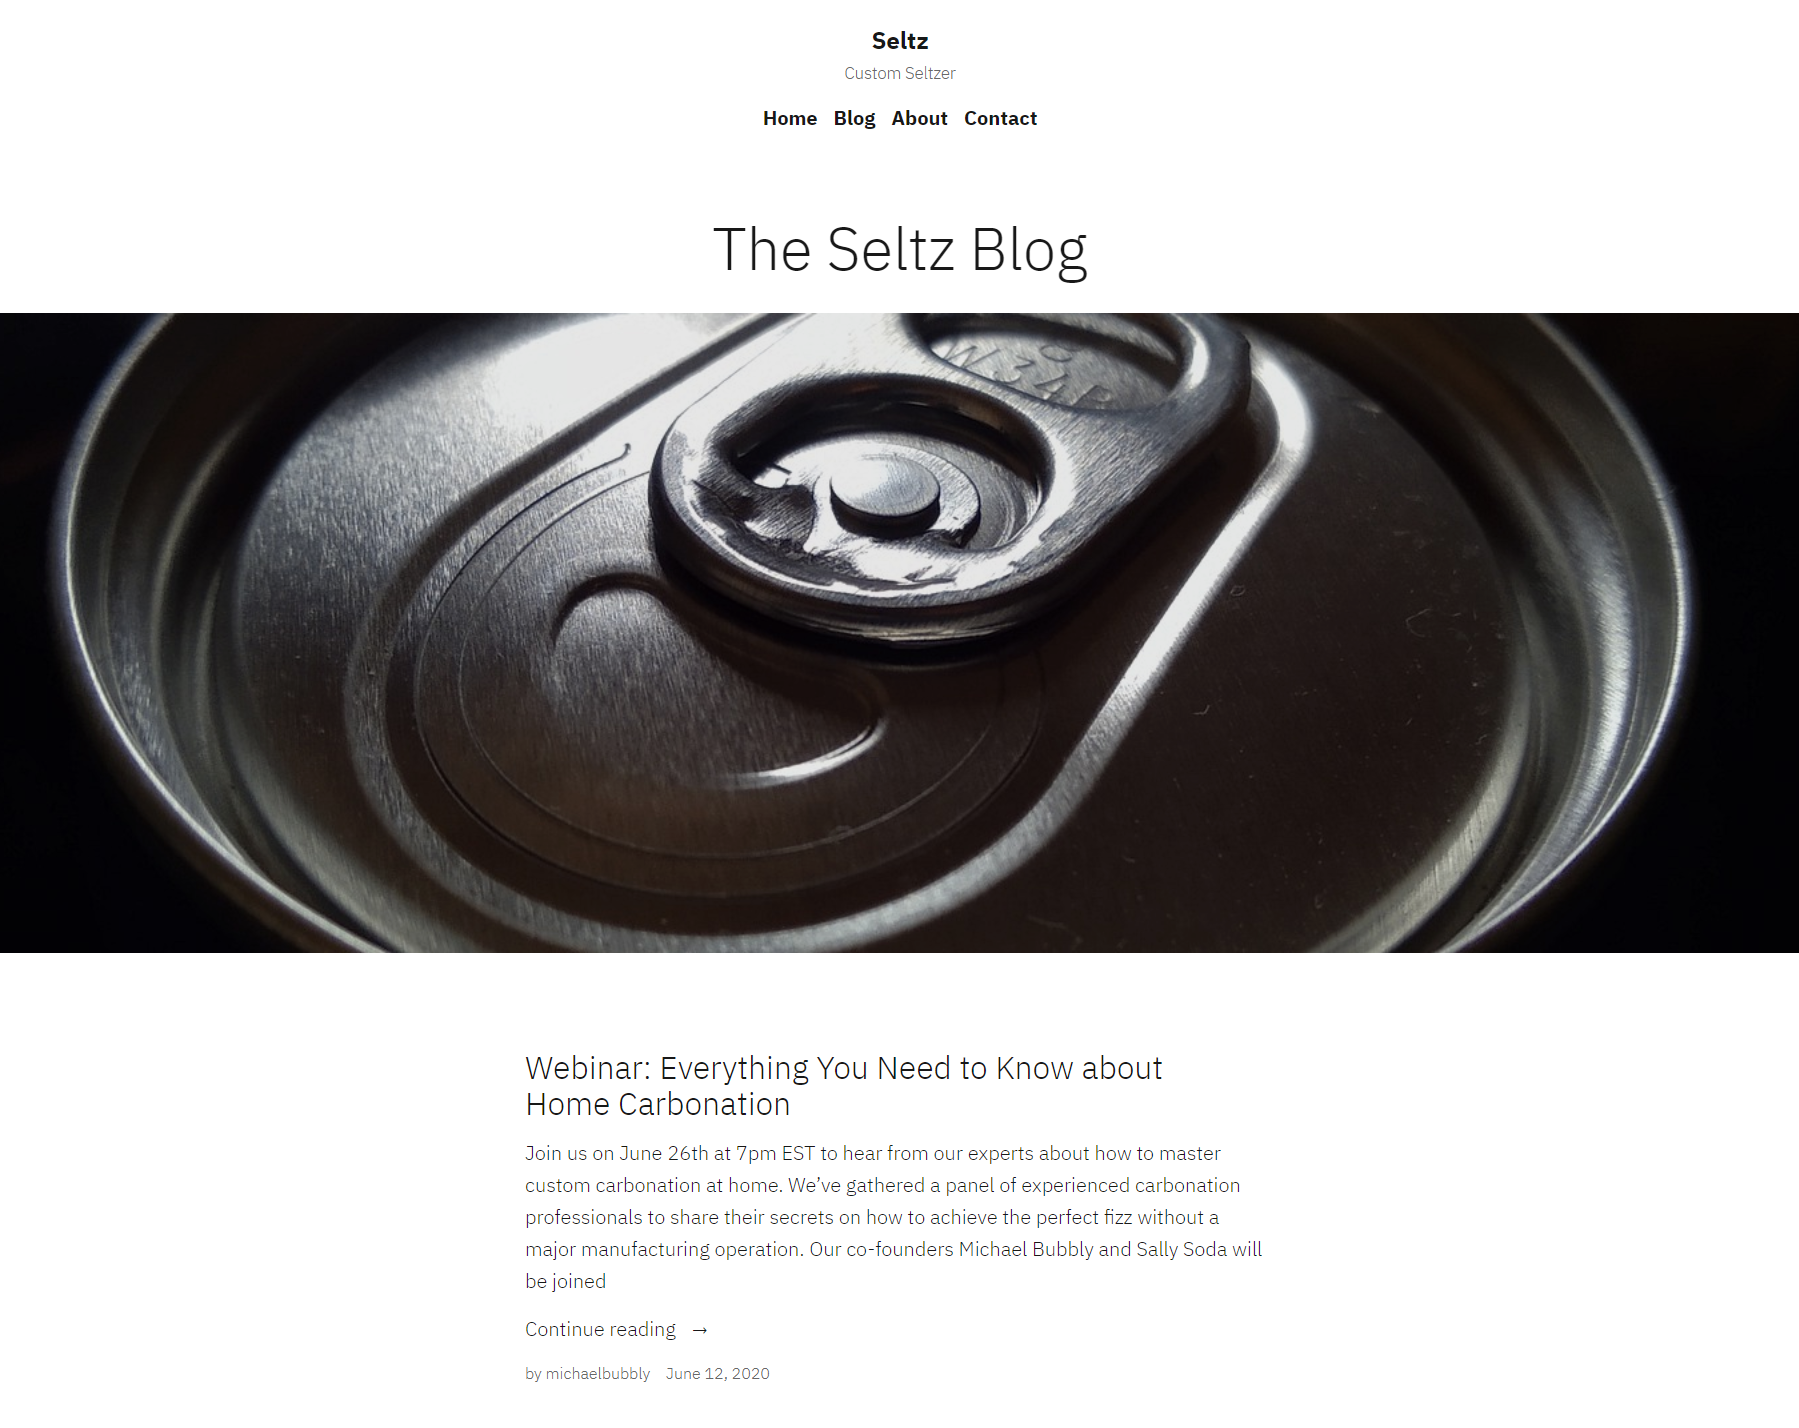 Seltz blog landing page